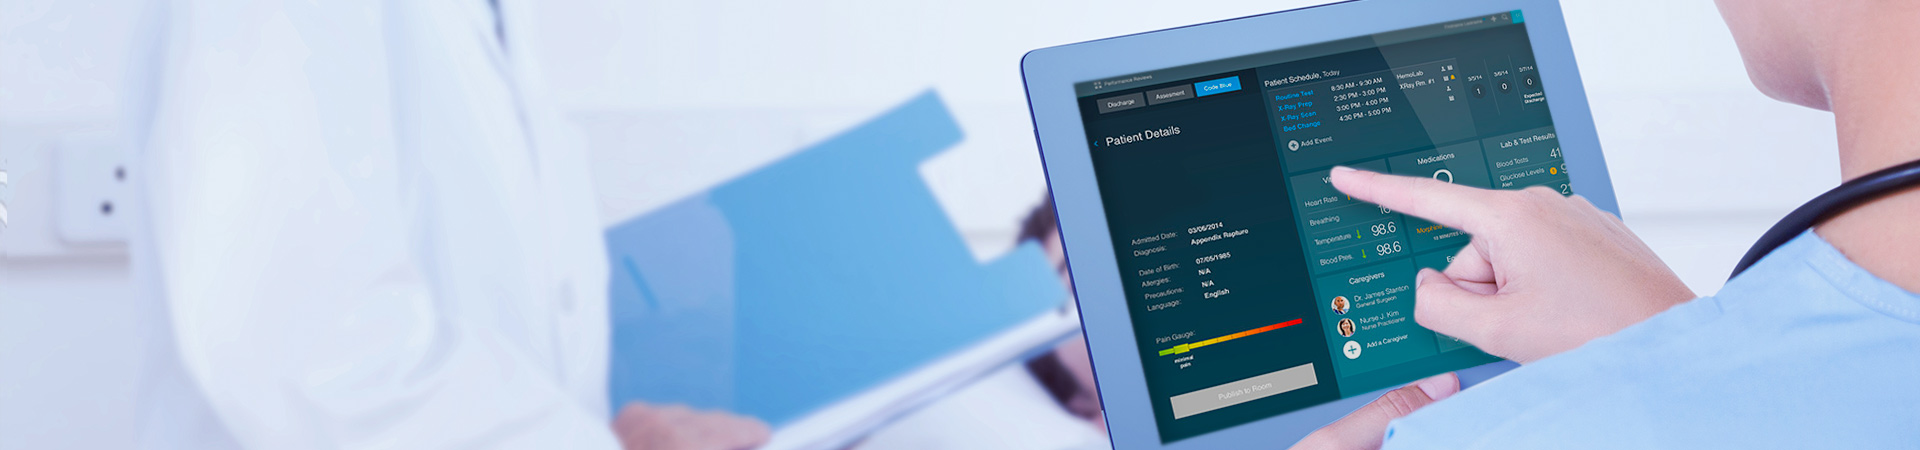 Entwicklung einer Krankenhaus-App für den iPad für Krankenschwestern